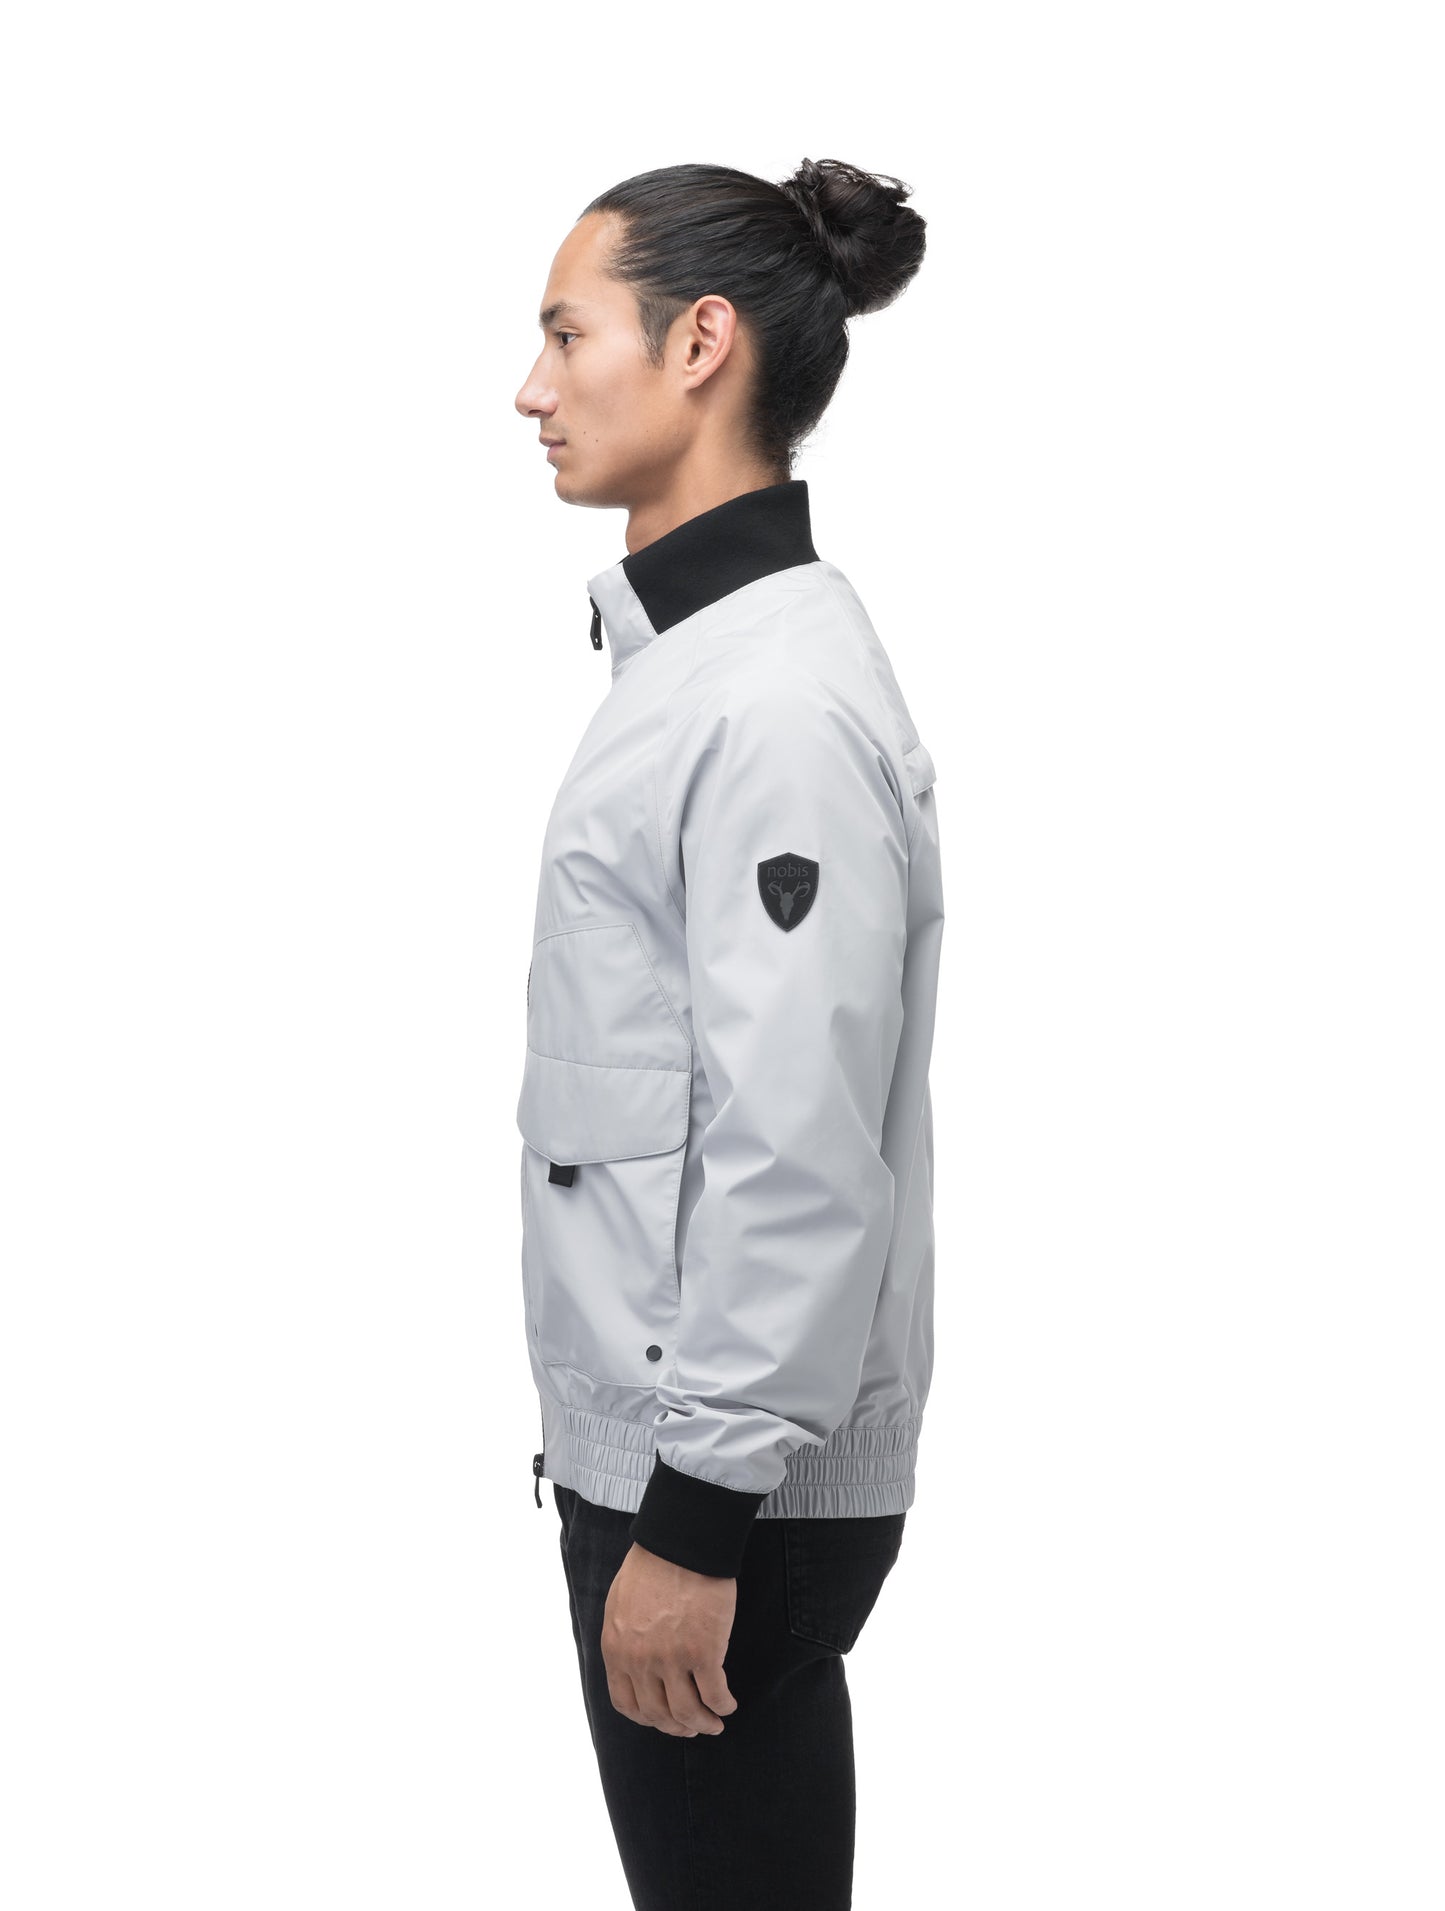 Men's hip length waterproof bomber jacket with 2-way zipper in Light Grey